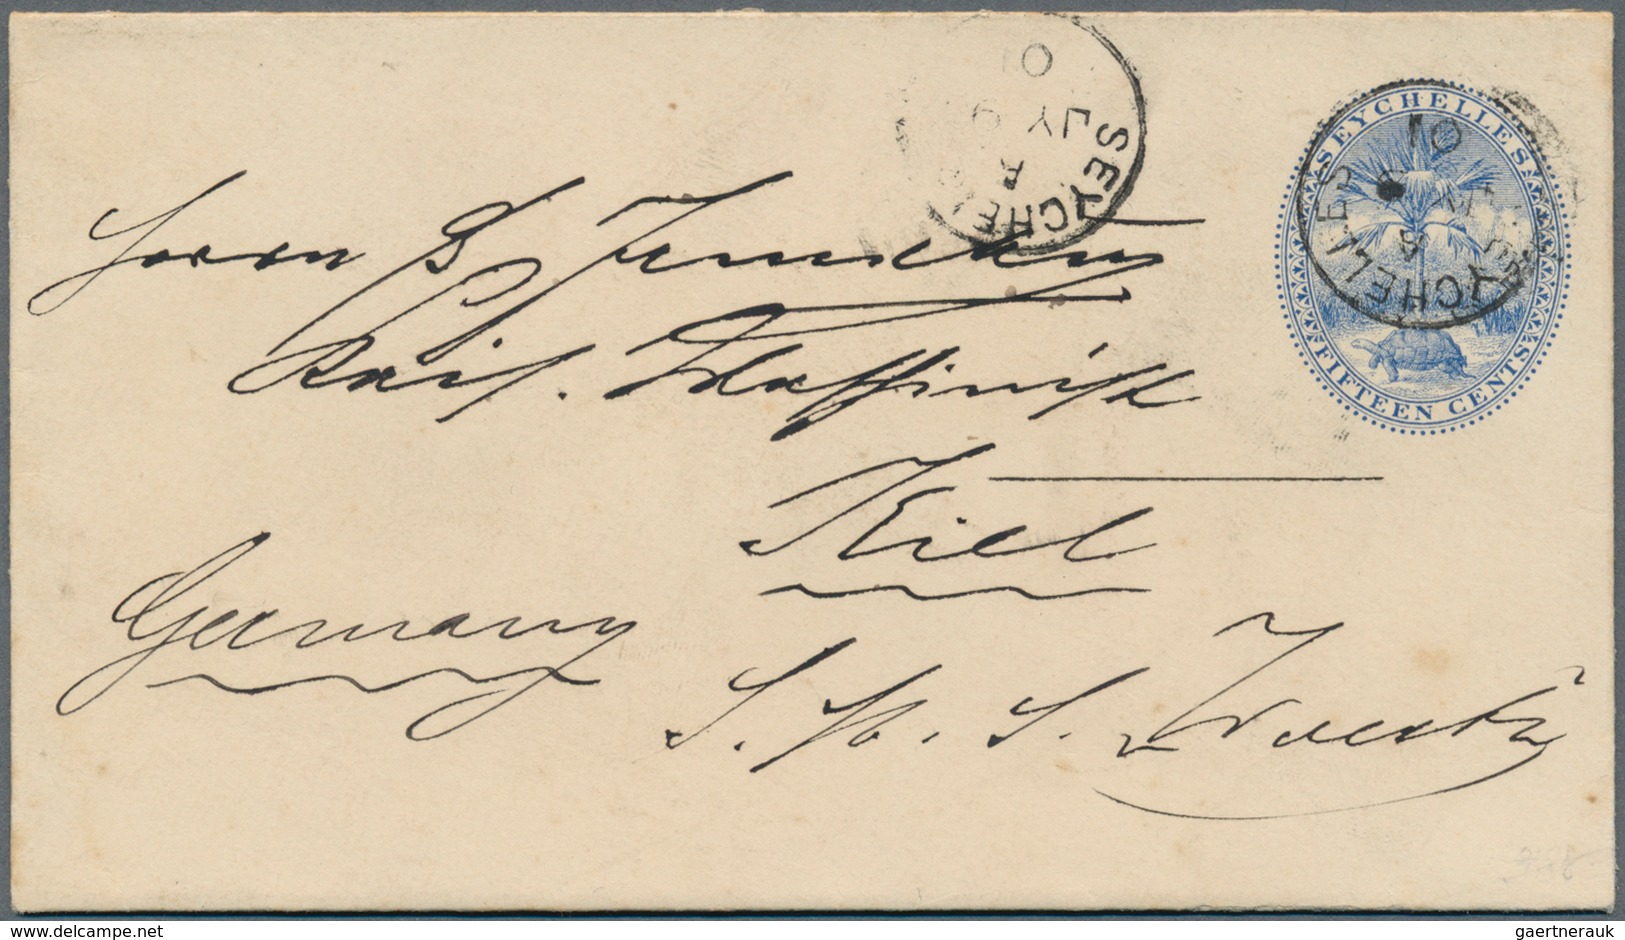 12441 Seychellen: 1901, Stationery Envelope 15 C. Blue Sent From "SEYCHELLES A JY 9 01" To Kiel, Germany, - Seychelles (...-1976)